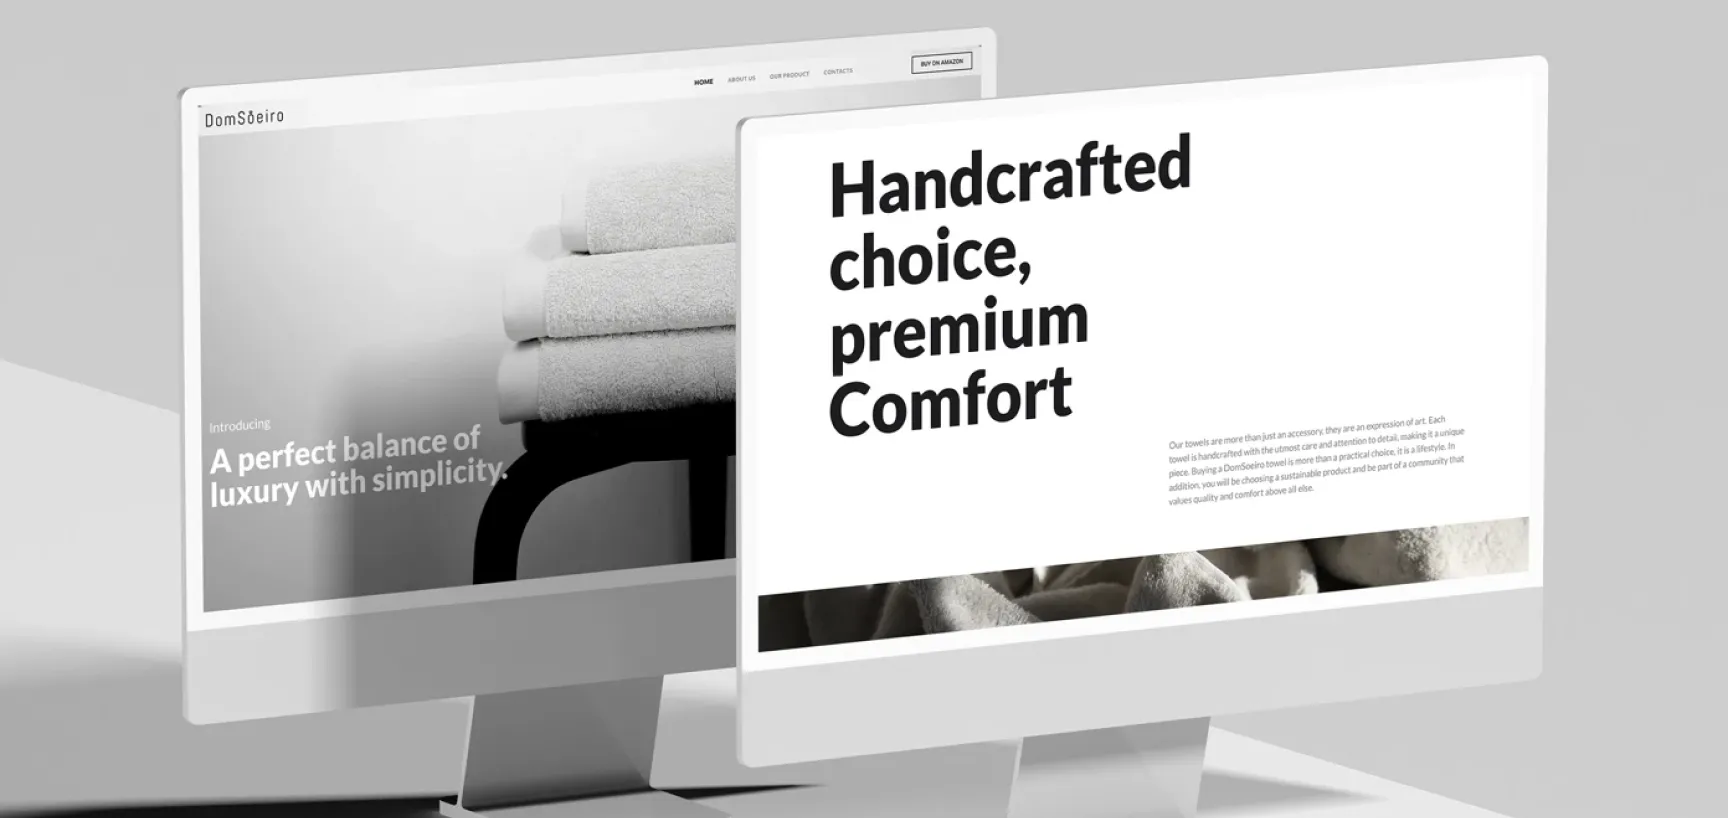 Web Design em Guimarães com o websites minimalistas - Exemplo, Dom Soeiro